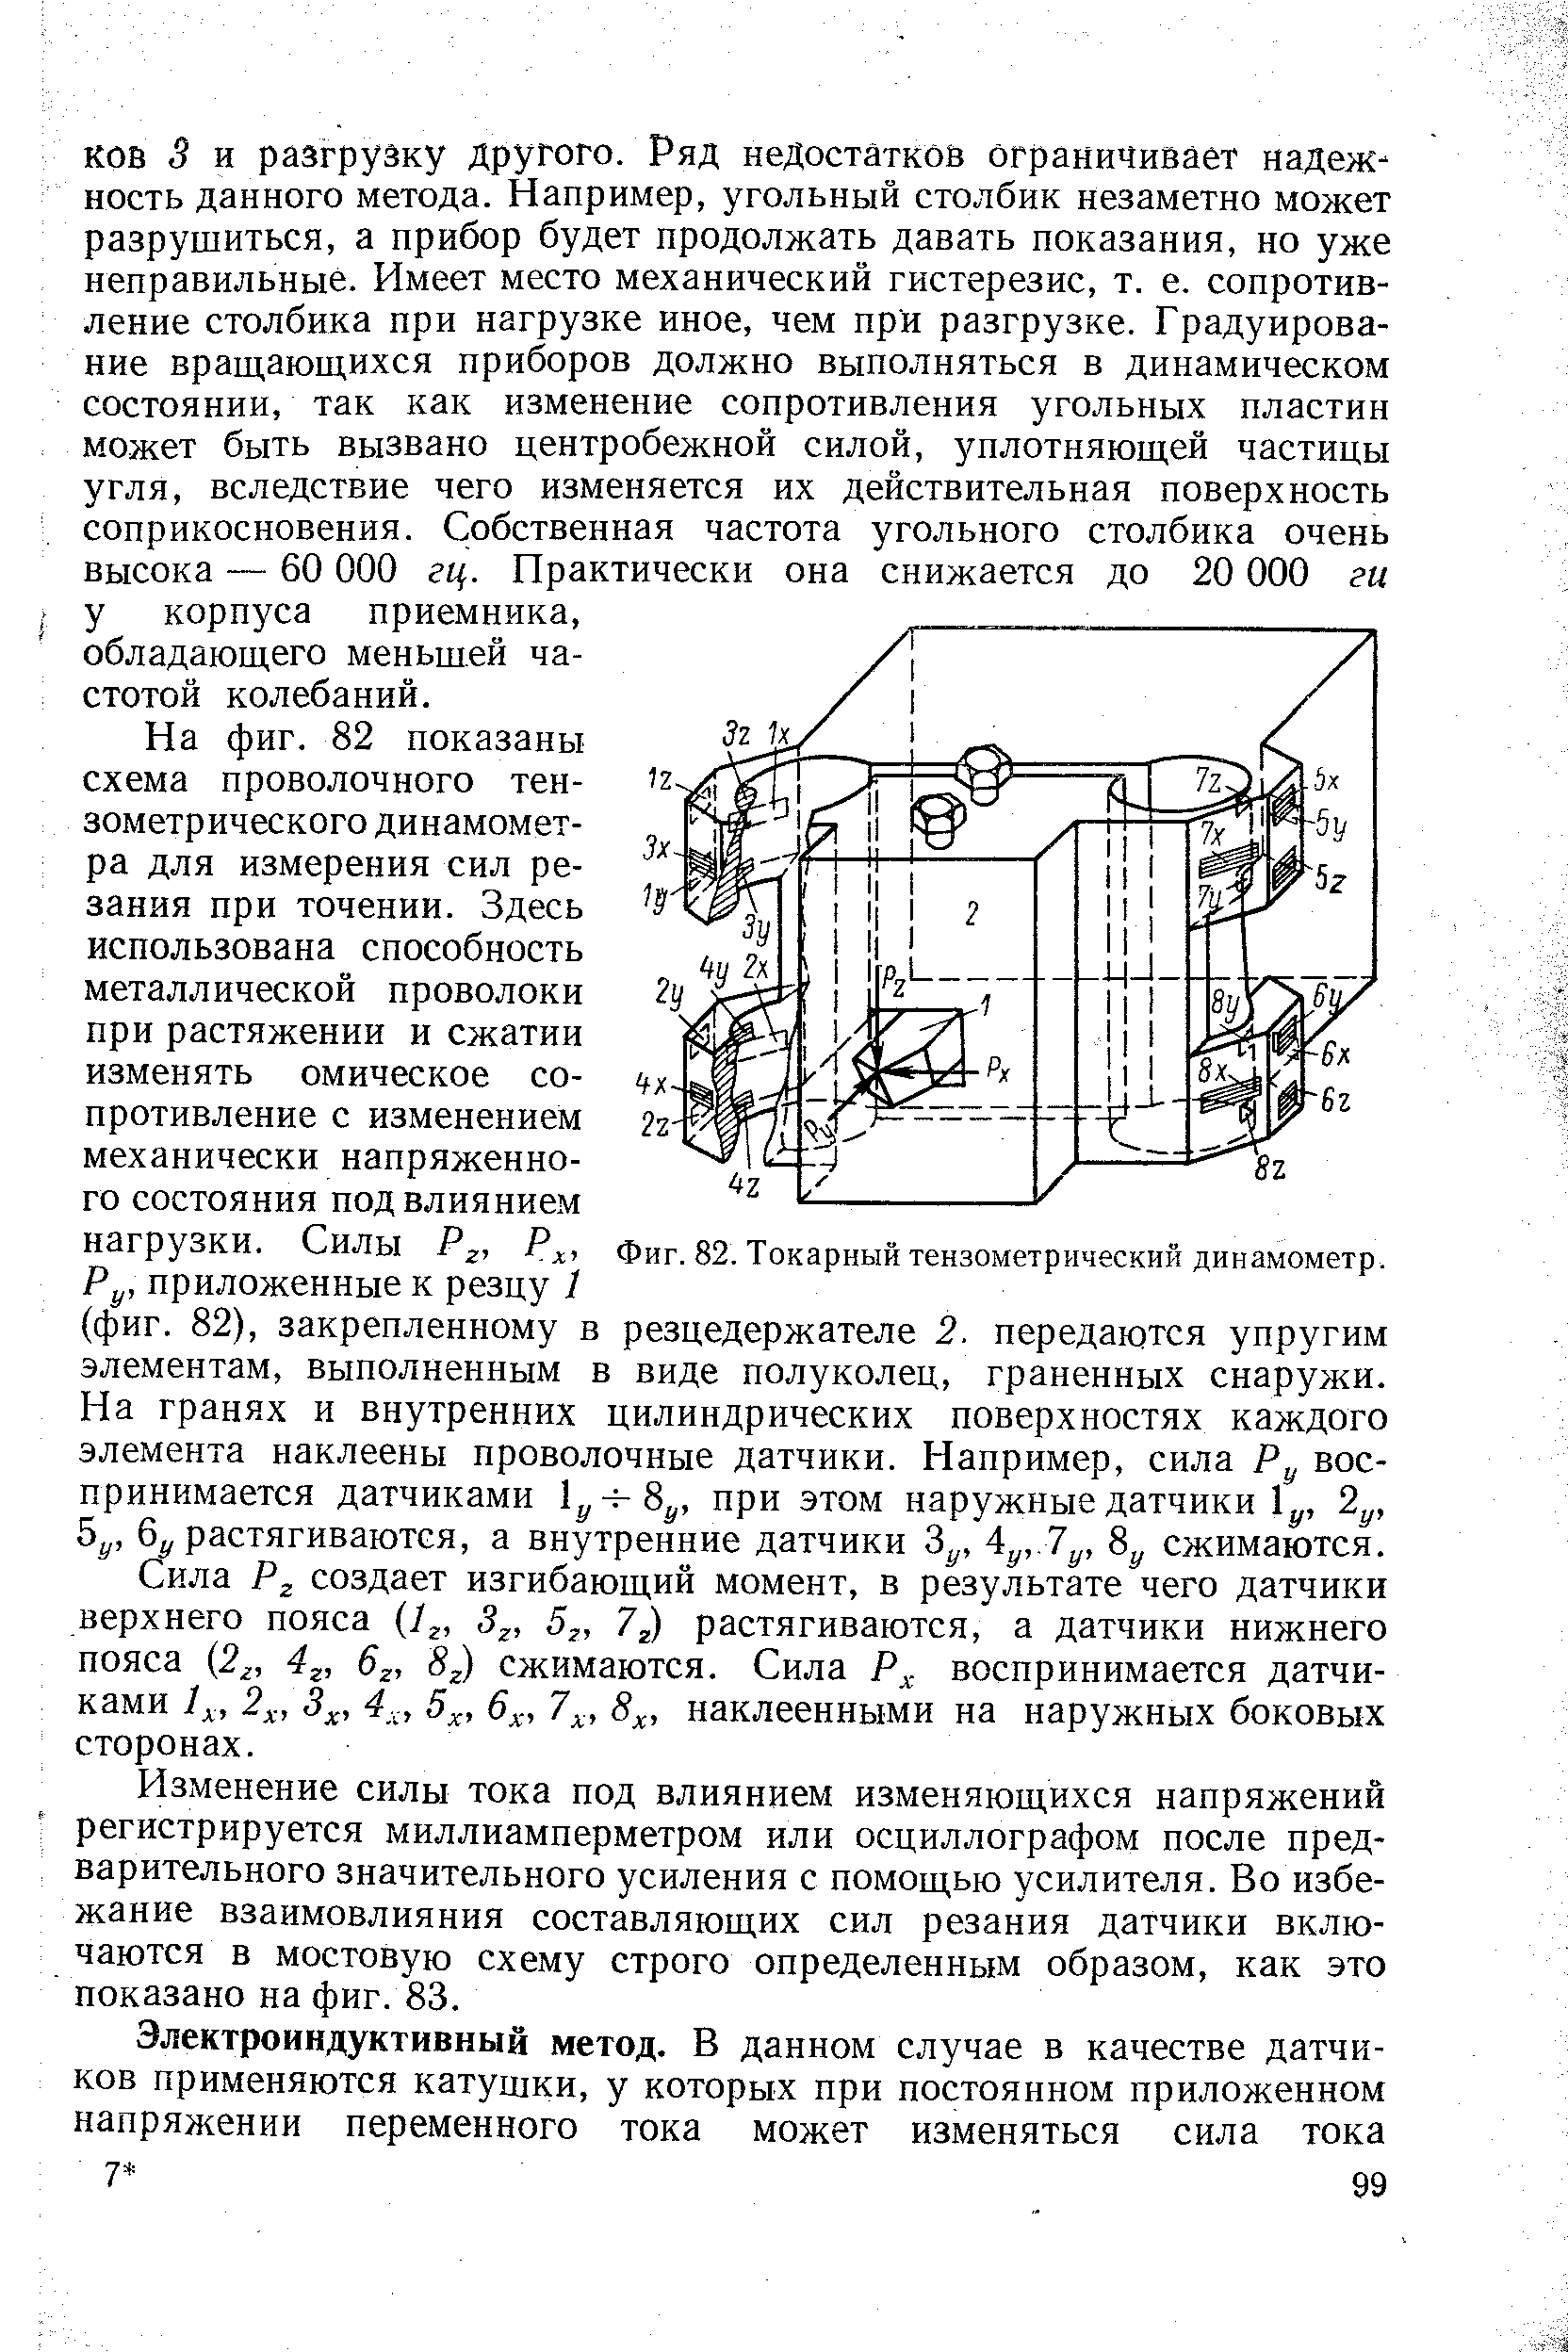 Фиг. 82. Токарный тензометрический динамометр.
